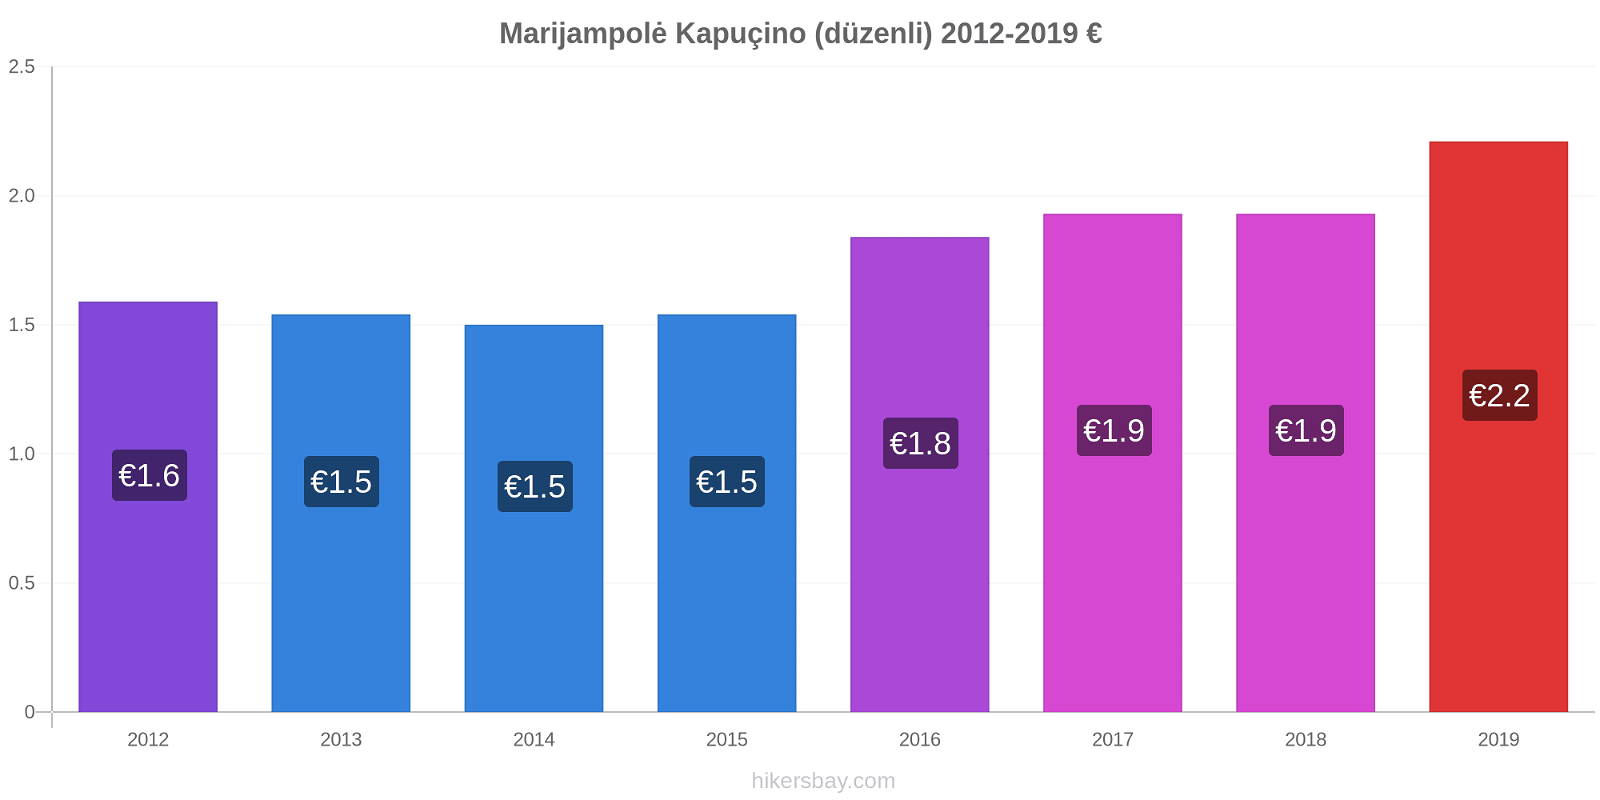 Marijampolė fiyat değişiklikleri Kapuçino (düzenli) hikersbay.com